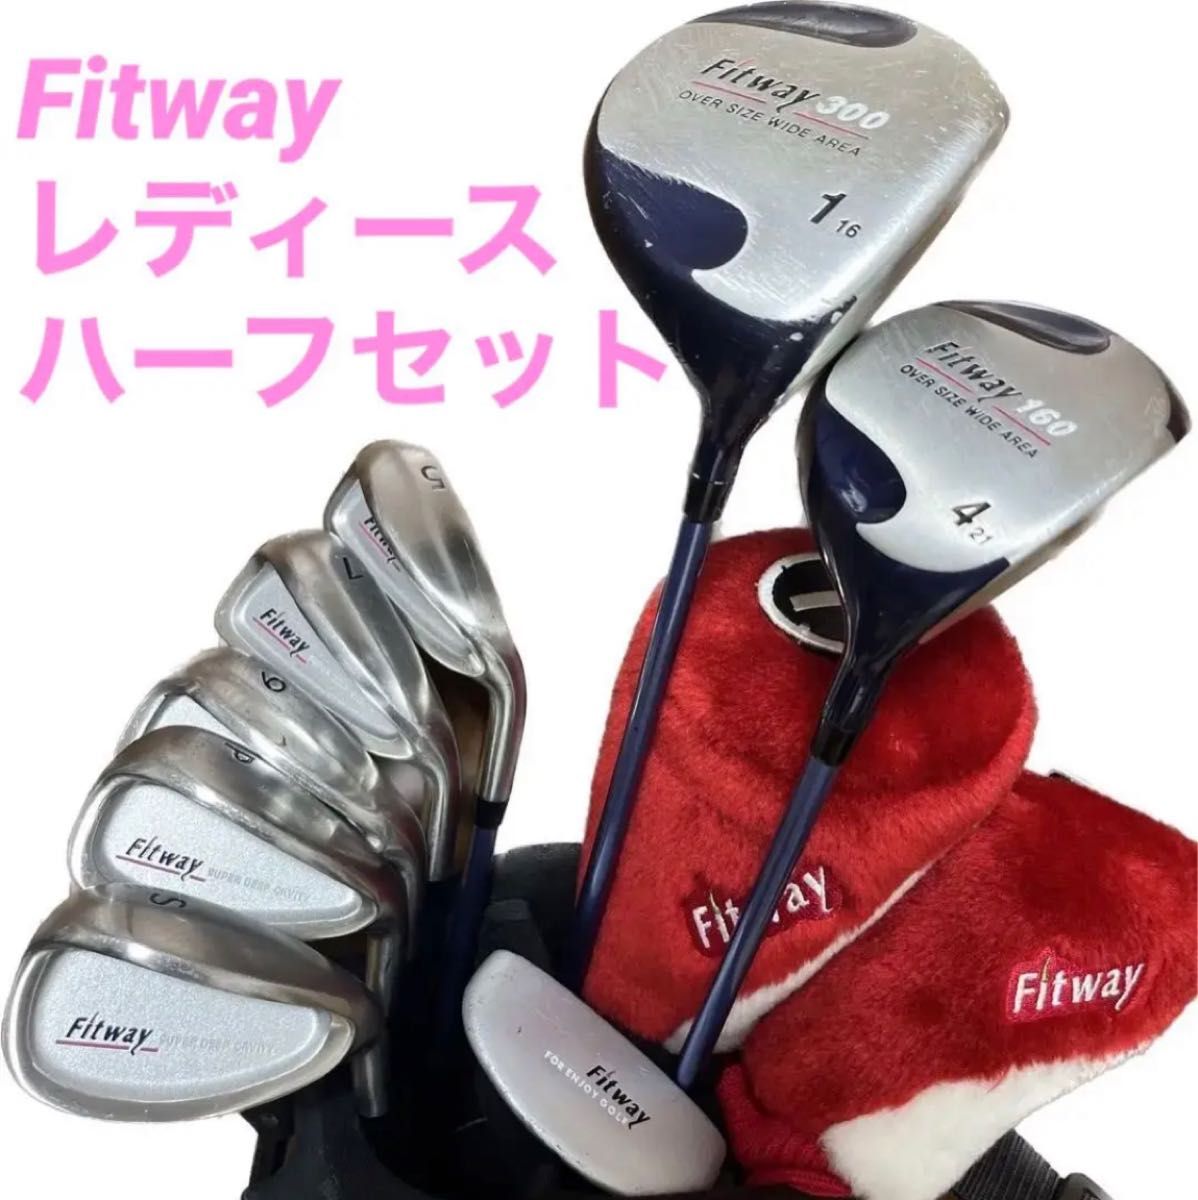 【Fitway】レディースゴルフクラブ8本 ハーフセット キャディバッグ ヘッドカバー おまけ多数 女性 初心者 ビギナー